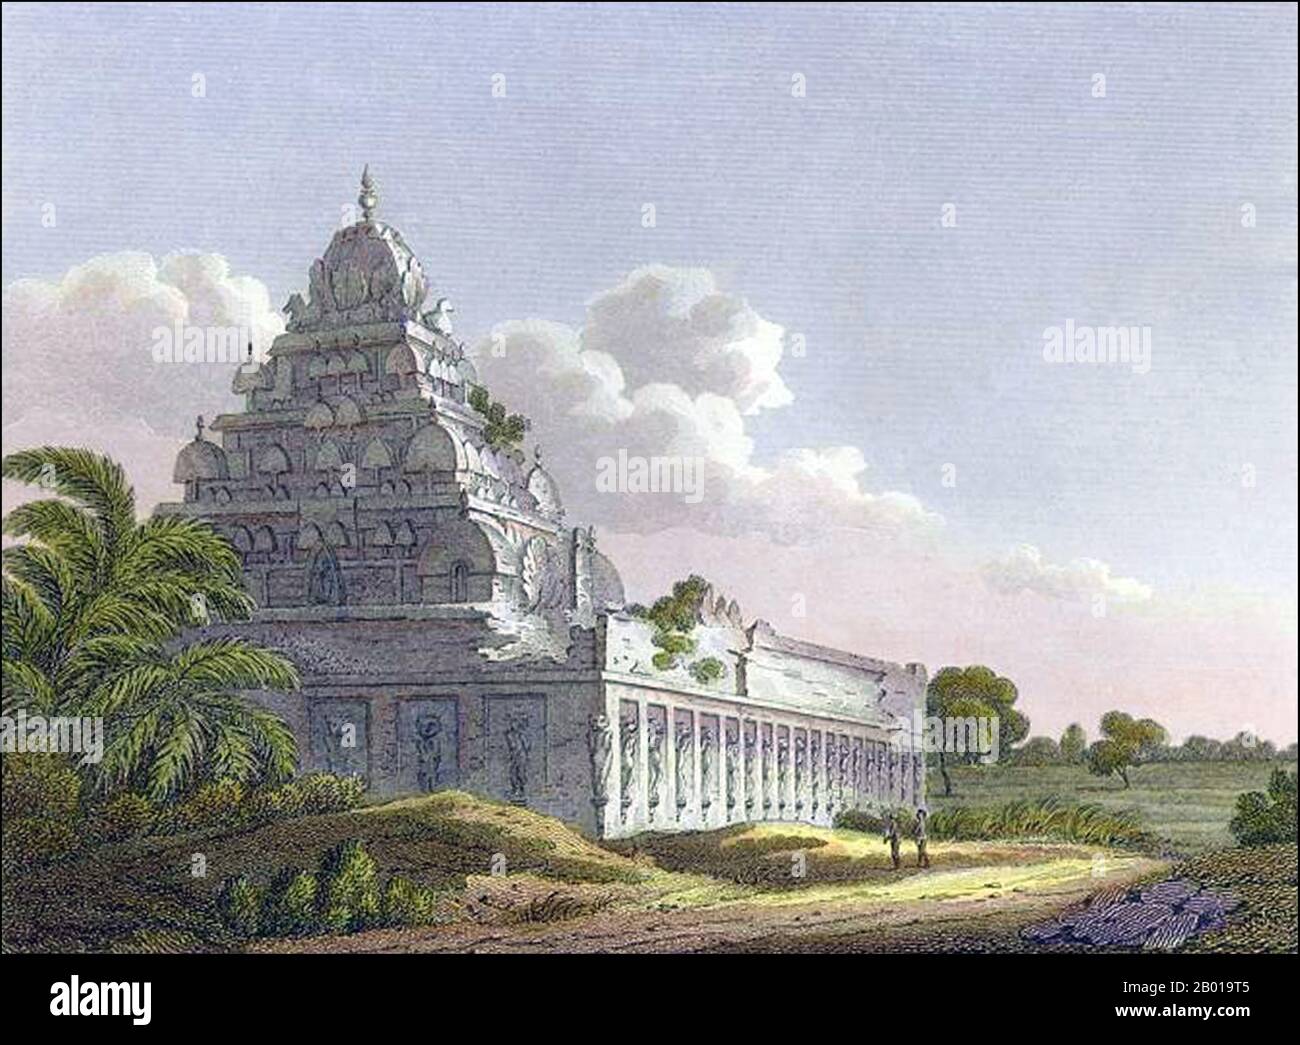 Inde: Un temple hindou à Kanchipuram, Tamil Nadu. Gravure en cuivre par James Sargeant Storer (1771-1853) après une photo de Henry Salt (1780-1827), 1811. Kanchipuram, Kanchi ou Kancheepuram (également connu sous le nom de Conjeeveram/Conjeevaram) est une ville de temple et une municipalité dans le district de Kanchipuram dans l'état indien du Tamil Nadu. C'est une ville de temple et le siège du quartier de Kanchipuram. Dans les temps anciens, il s'appelait Kanchi et Kanchiampathi. Il y a plusieurs grands temples (dont certains des plus grands temples de Vishnu et des temples de Shiva du Tamil Nadu), y compris le temple de Varadharaja Perumal. Banque D'Images